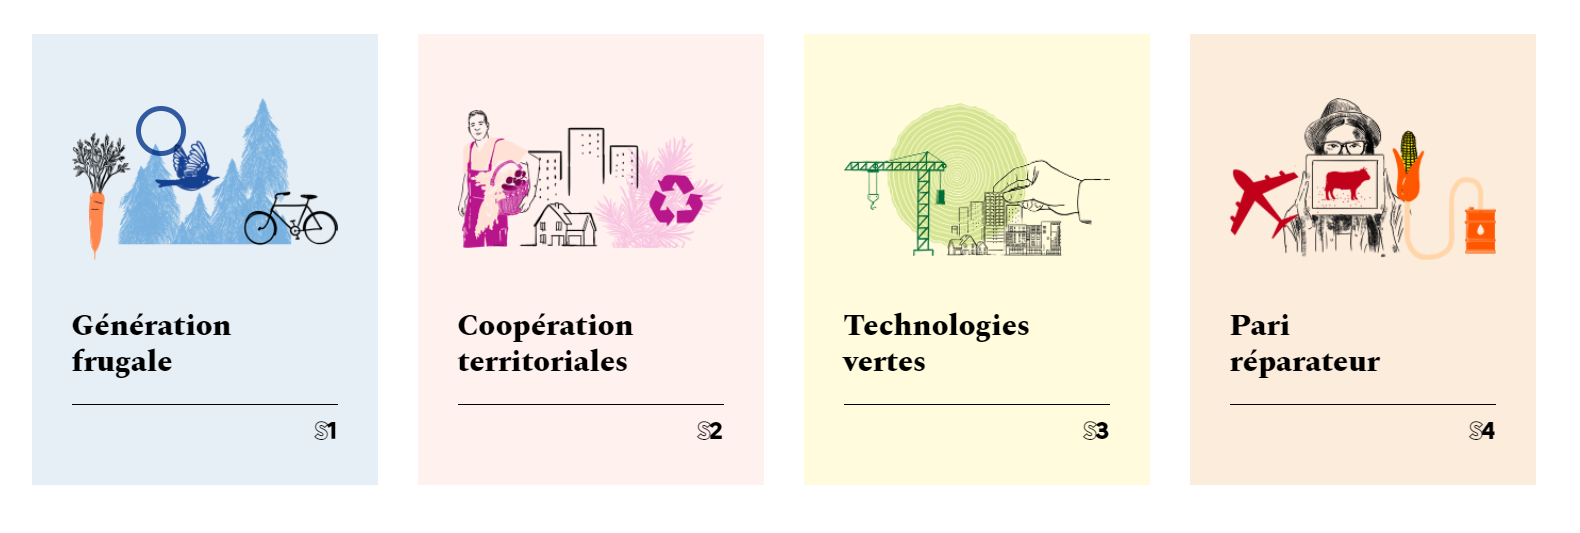 4 scénarios étudiés par l’ADEME pour atteindre la neutralité carbone en 2050